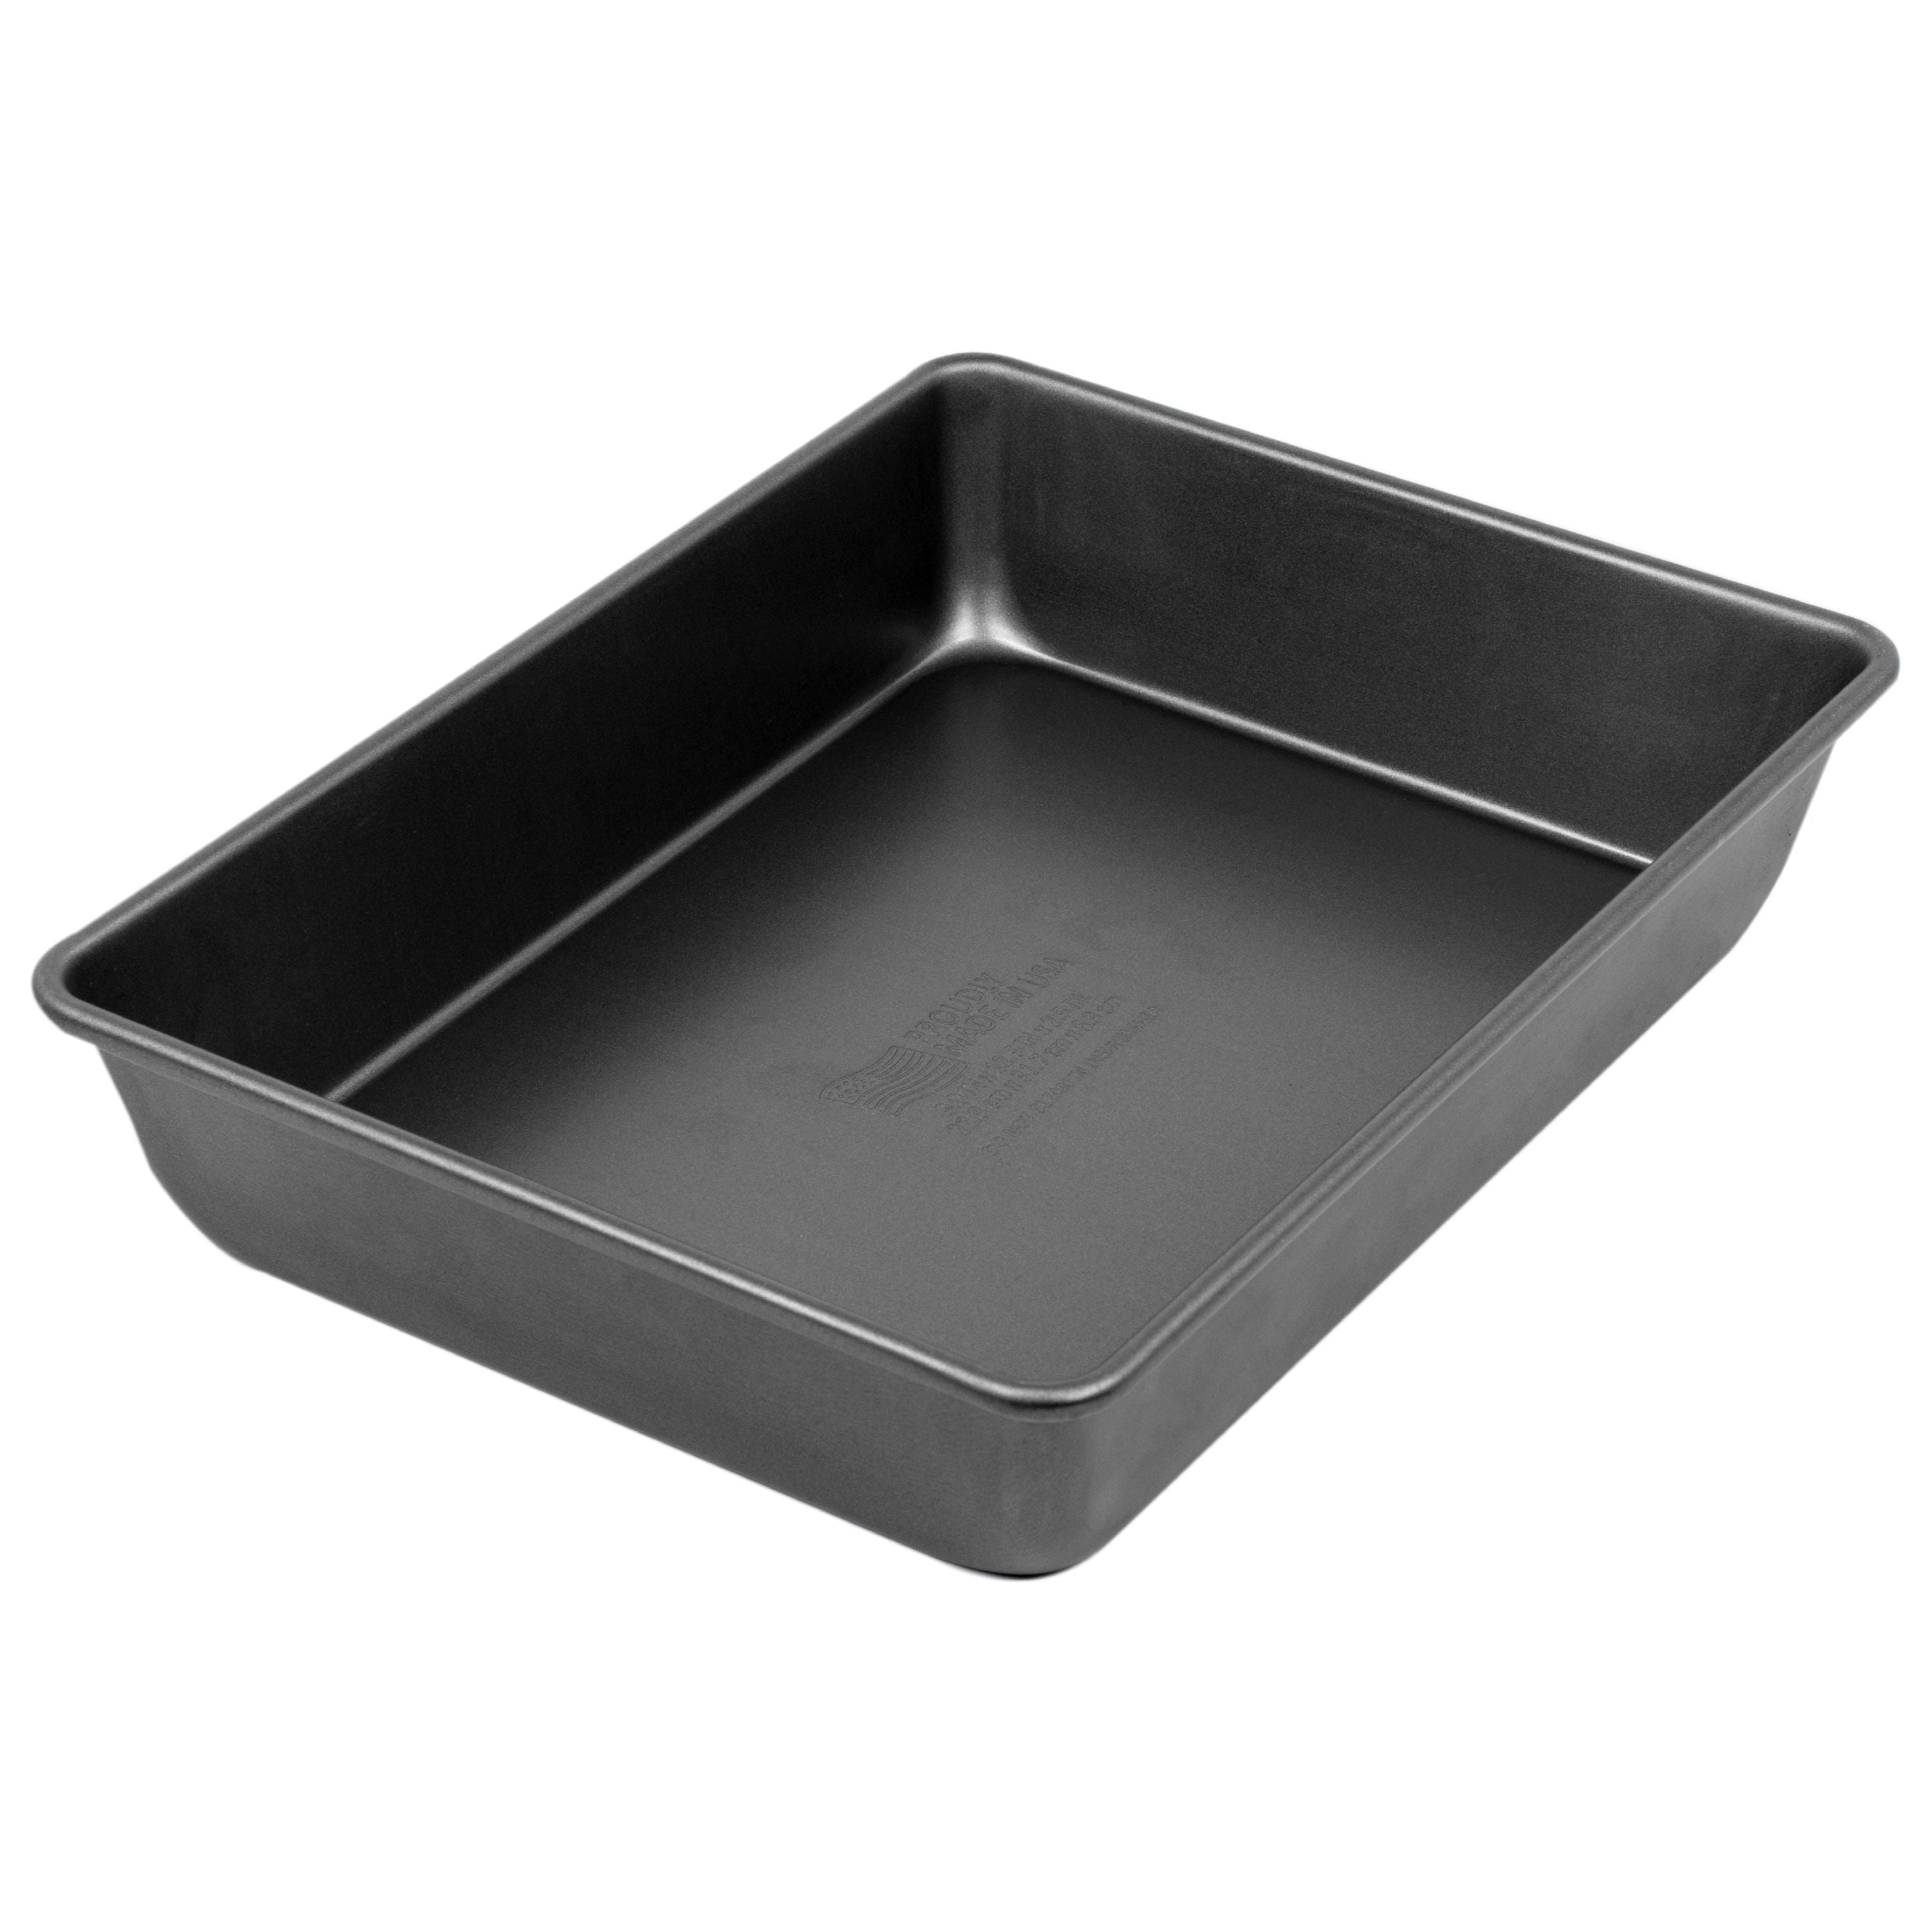 Acrux7 4 Pcs Baking Pans Set, Nonstick Baking Pans & Bowl Set, Deep Metal Baking Sheet Pans, Rectangular Stackable Baking Trays, Cake Pans Sets for